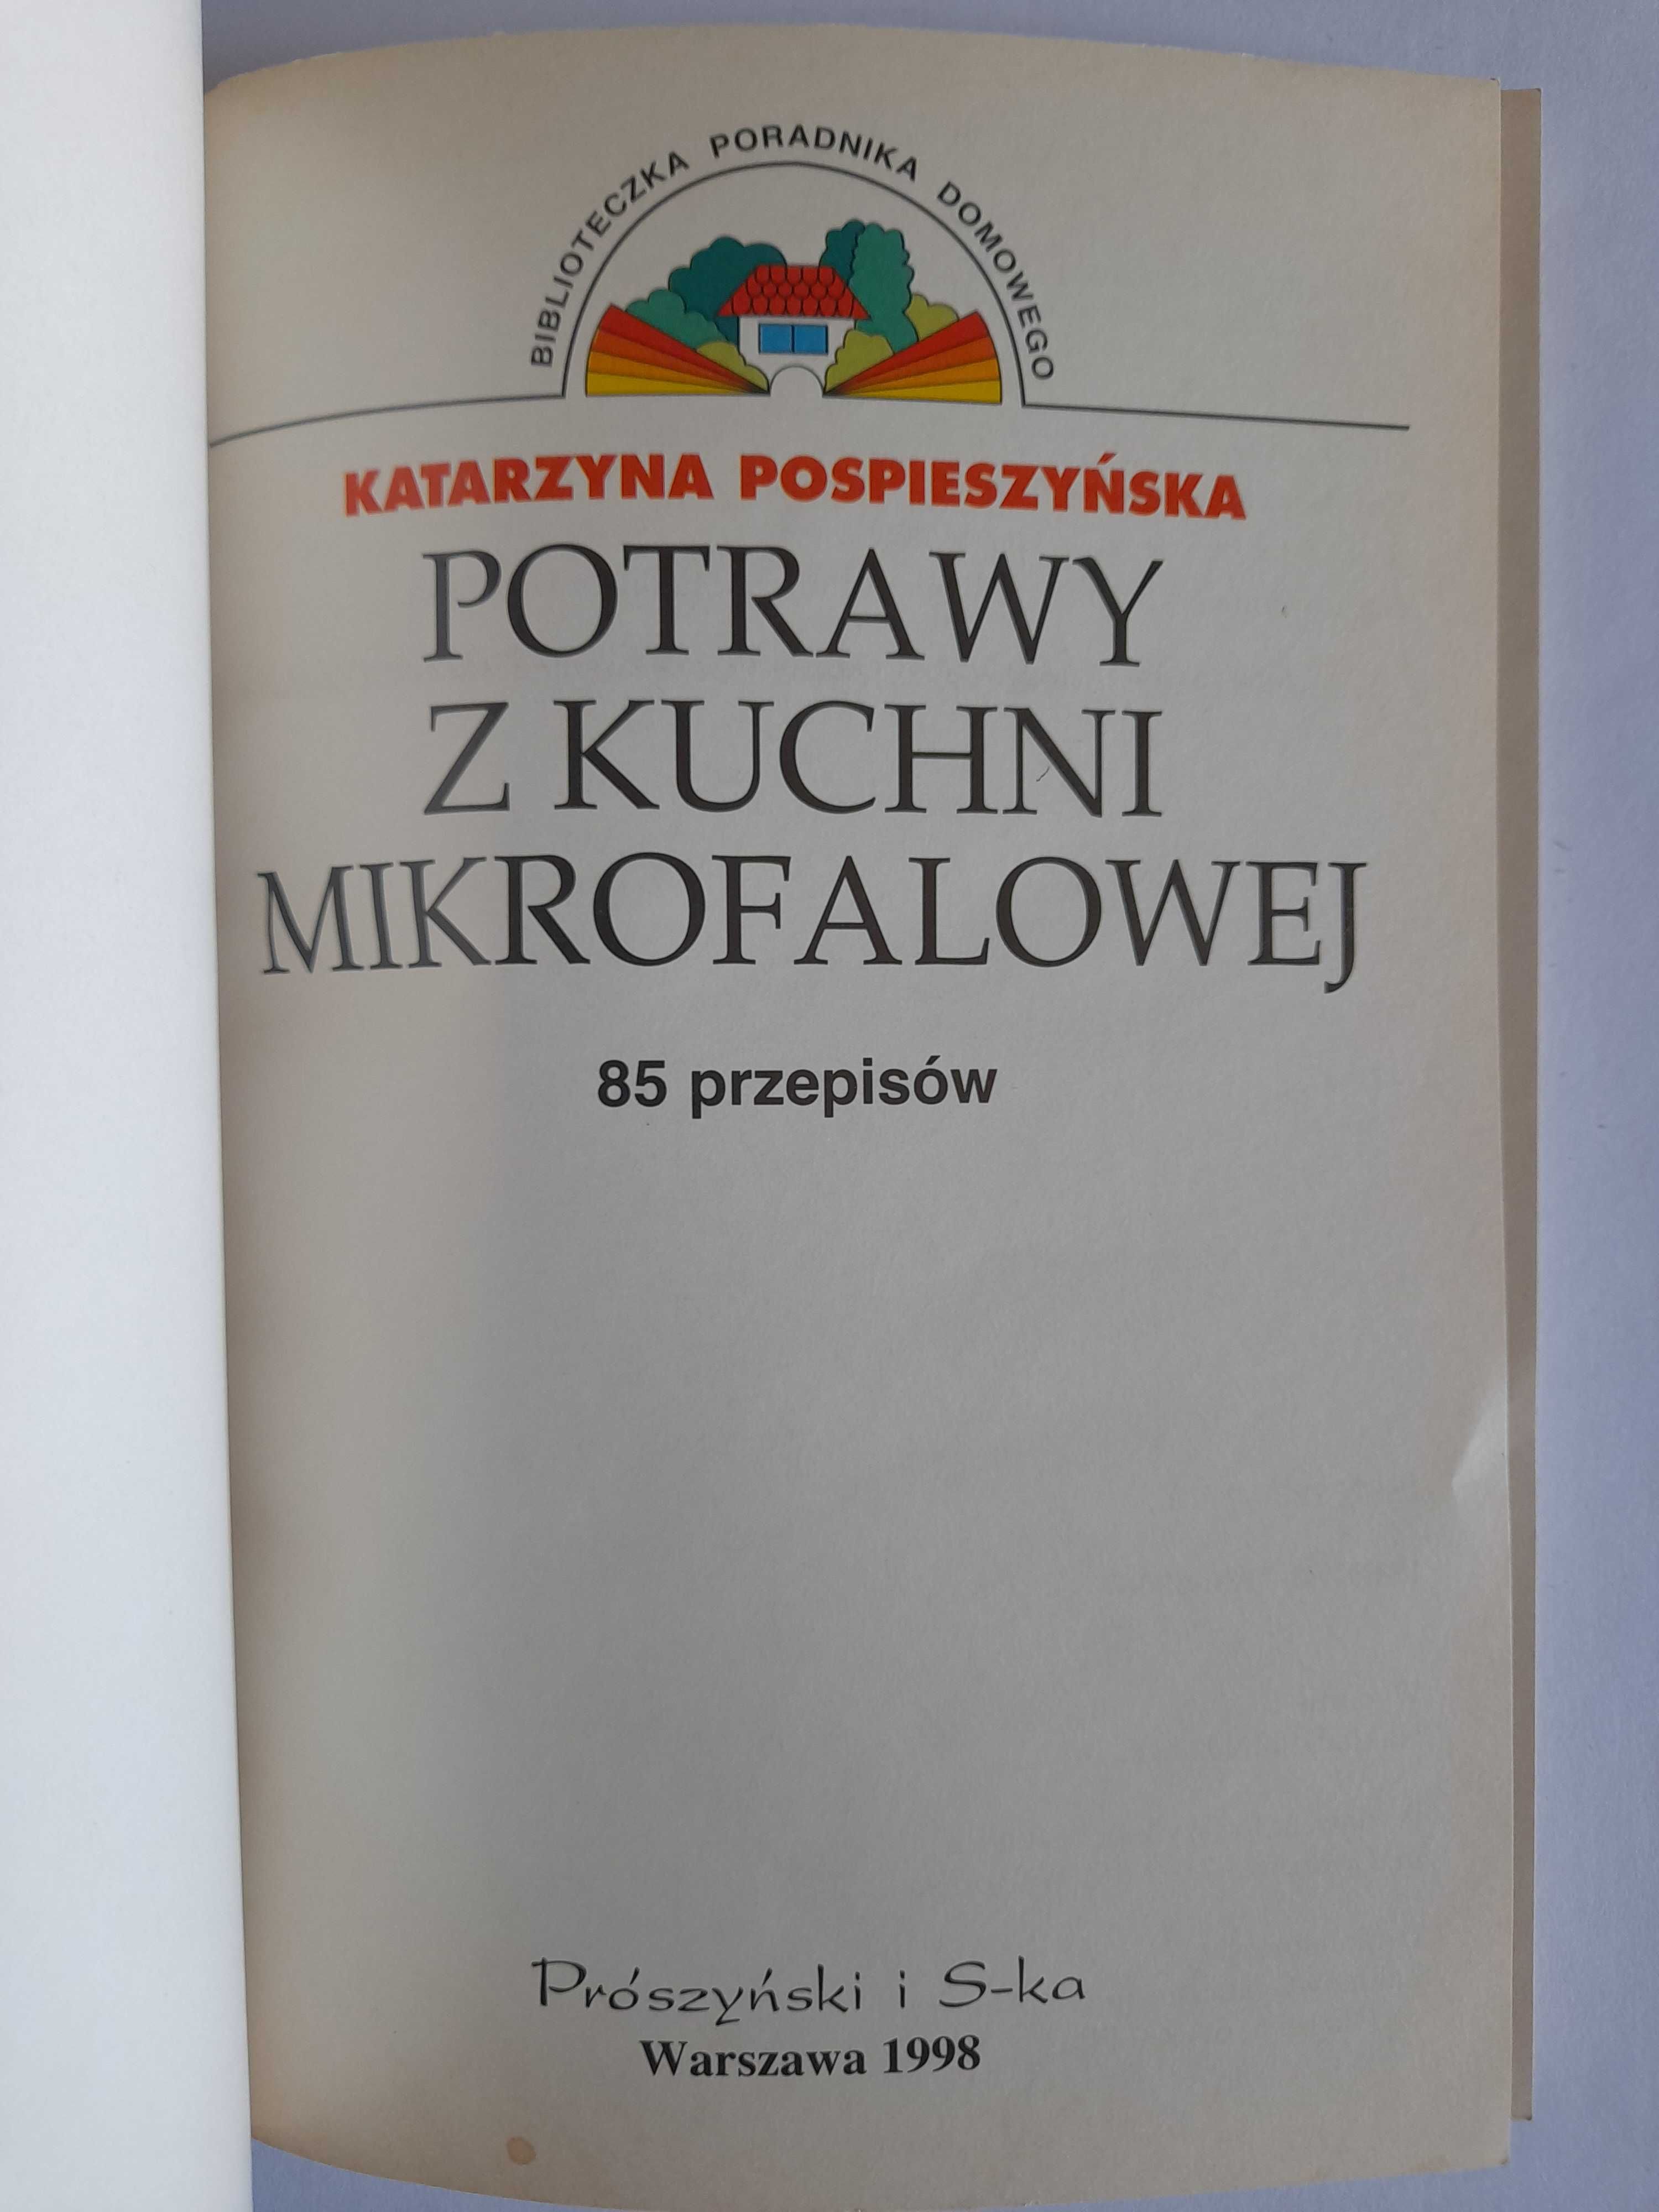 Potrawy z kuchni mikrofalowej - Katarzyna Pospieszyńska